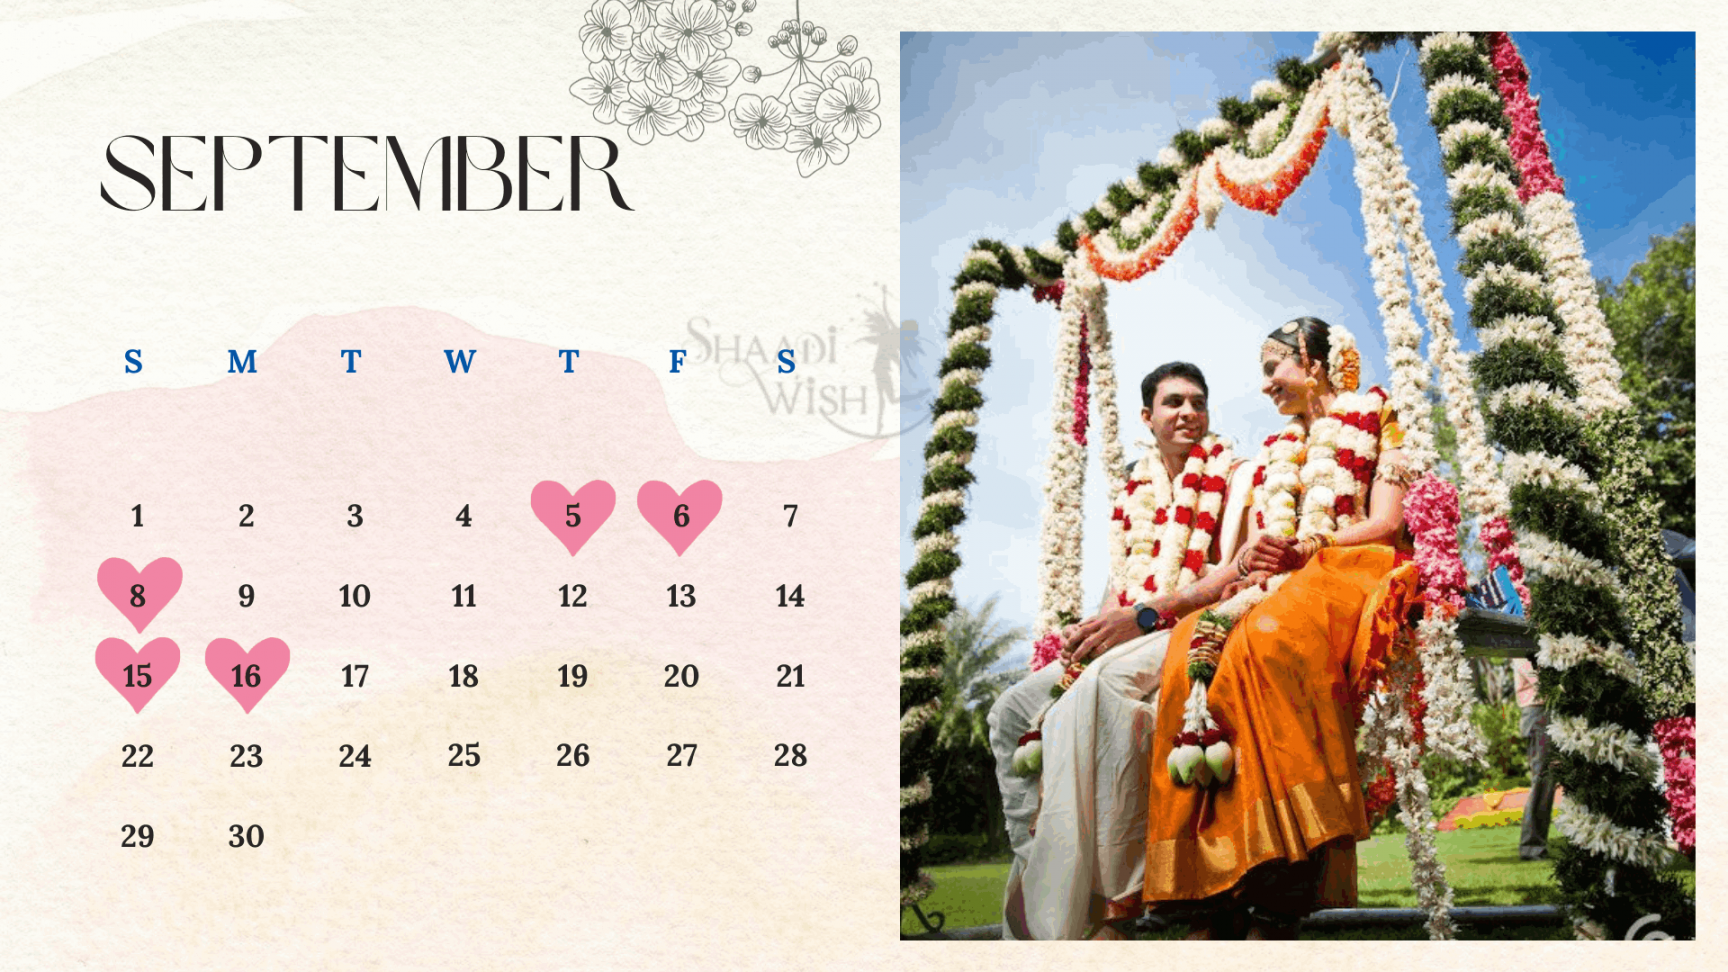 shubha muhurtham tamil wedding dates shaadiwish 5